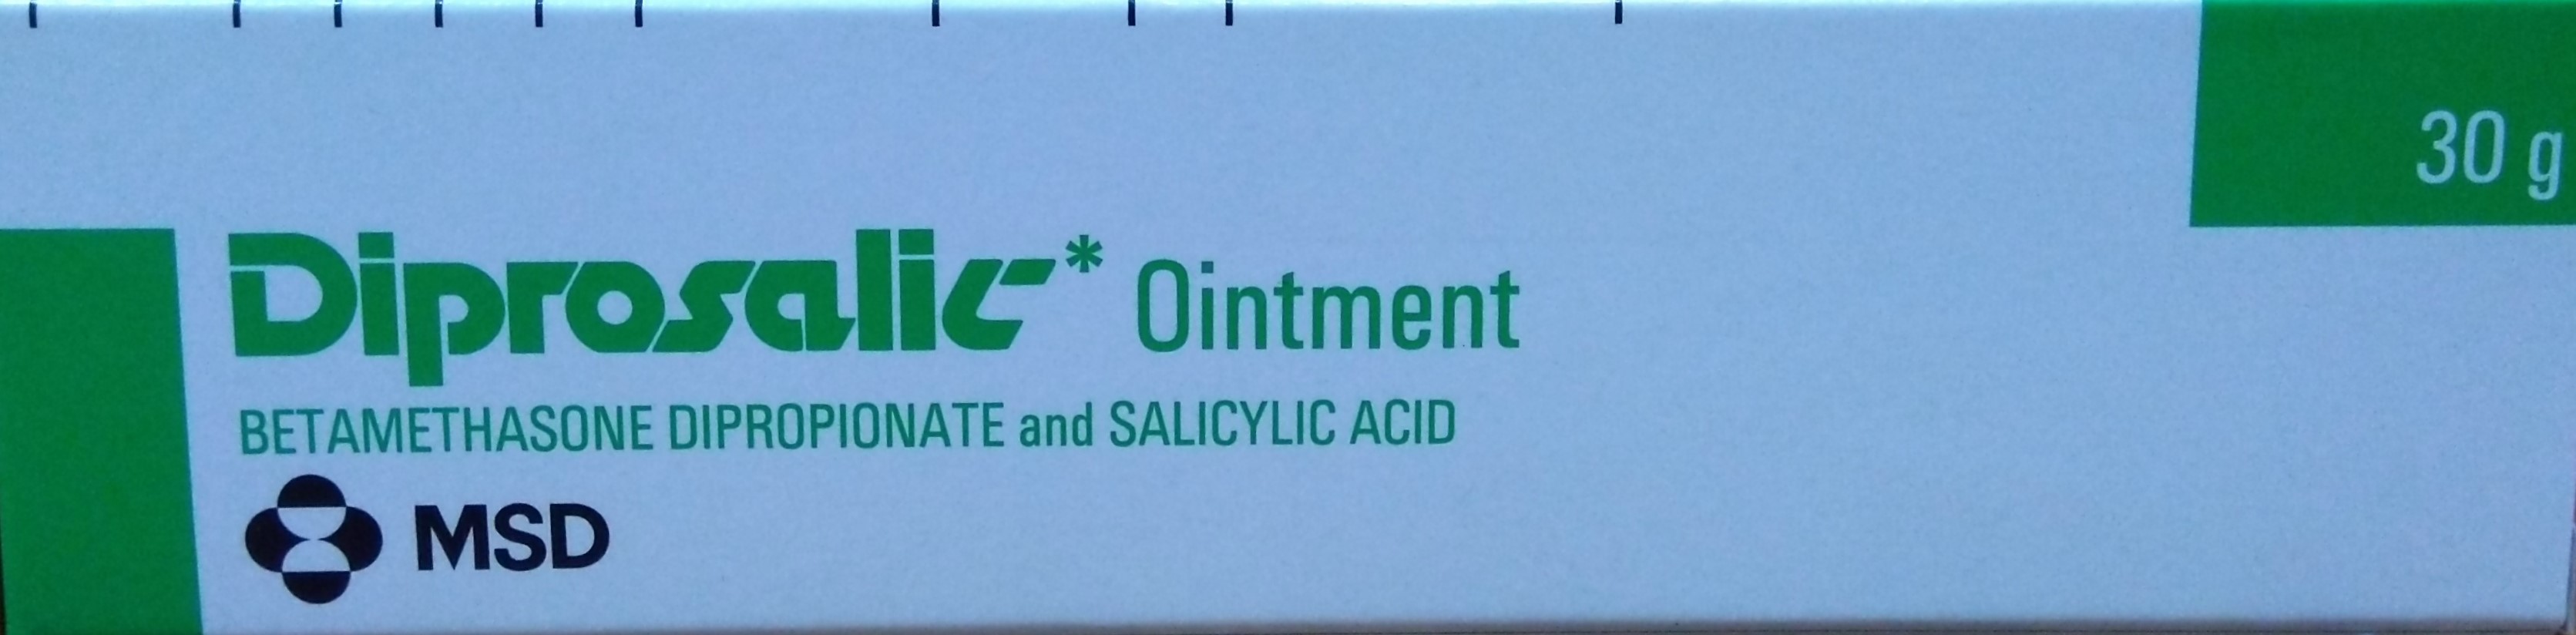 Diprosalic Ointment